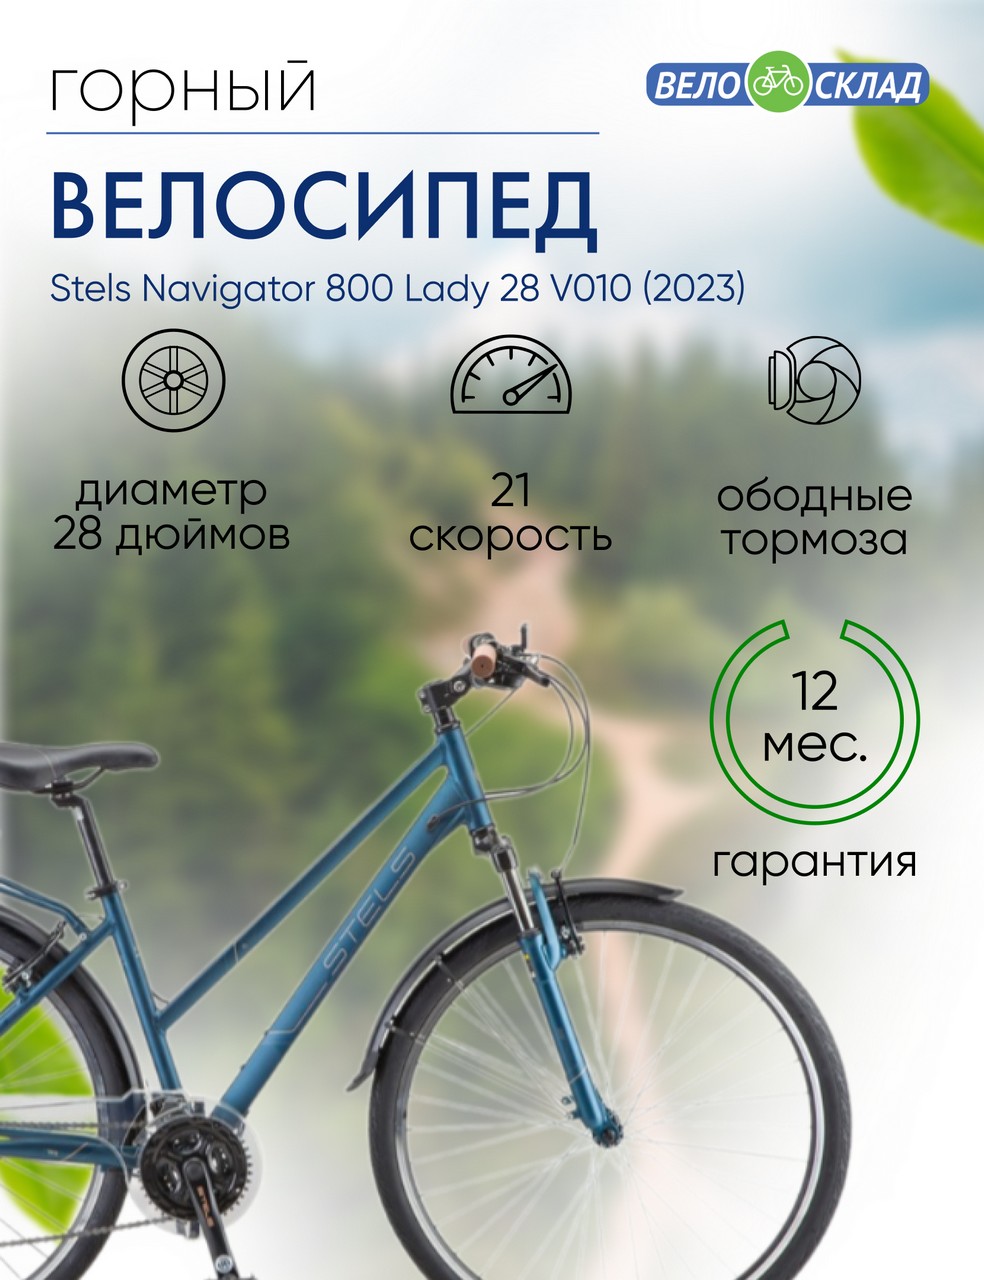 Женский велосипед Stels Navigator 800 Lady 28 V010, год 2023, цвет Синий, ростовка 17